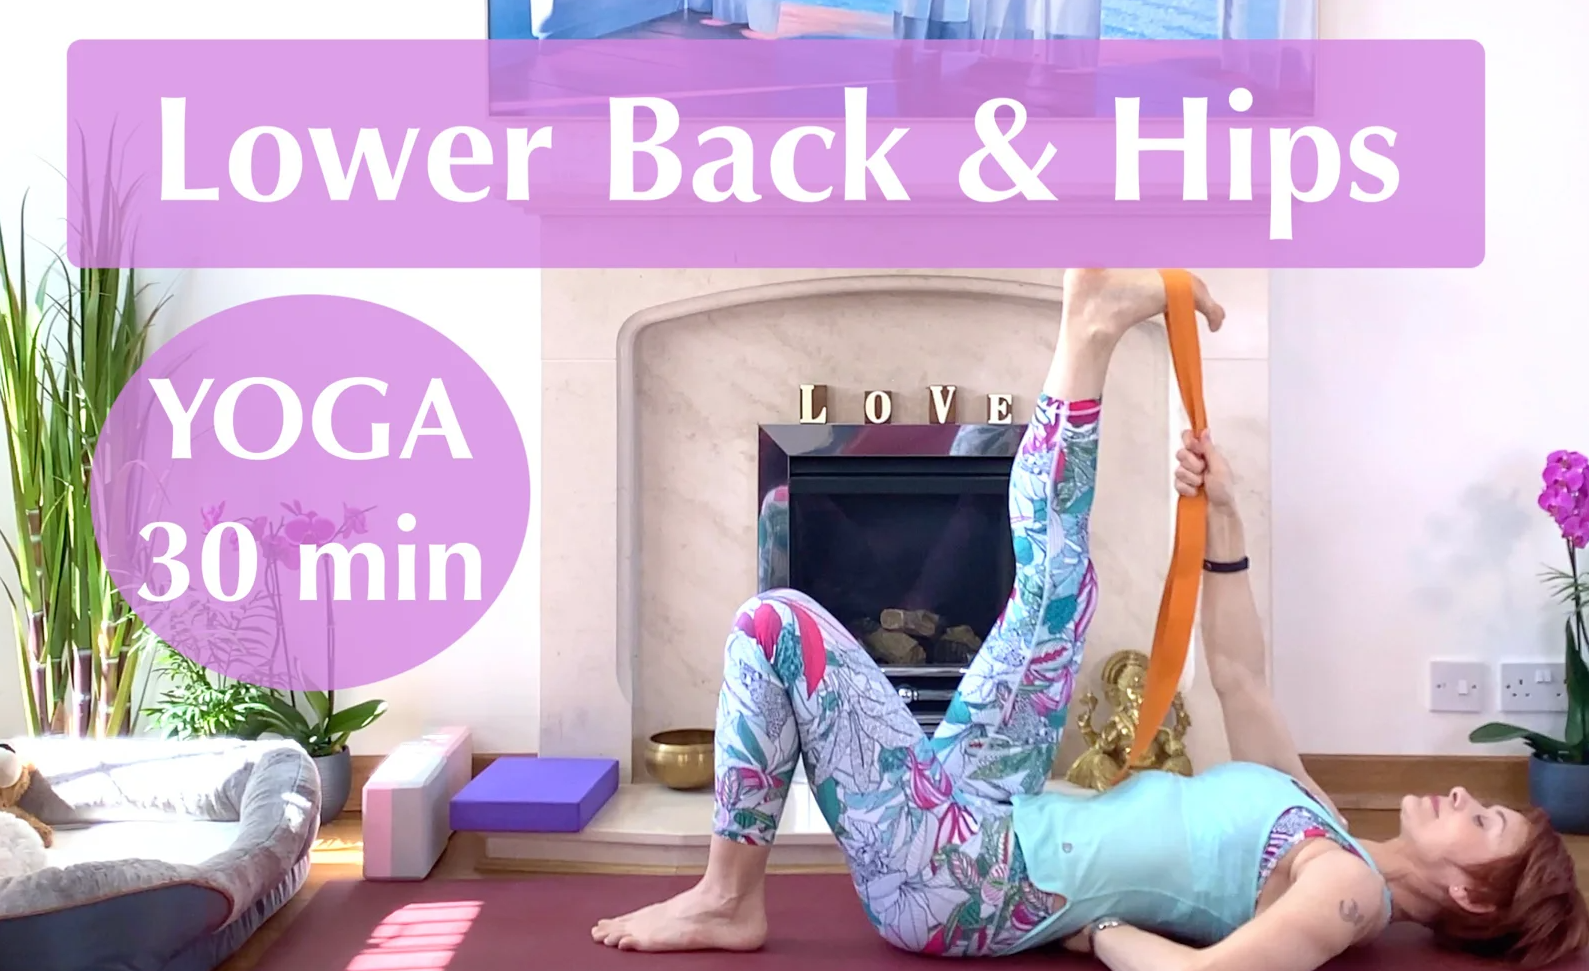 Olga Oakenfold - 30 min Yoga For Lower Back & Hips